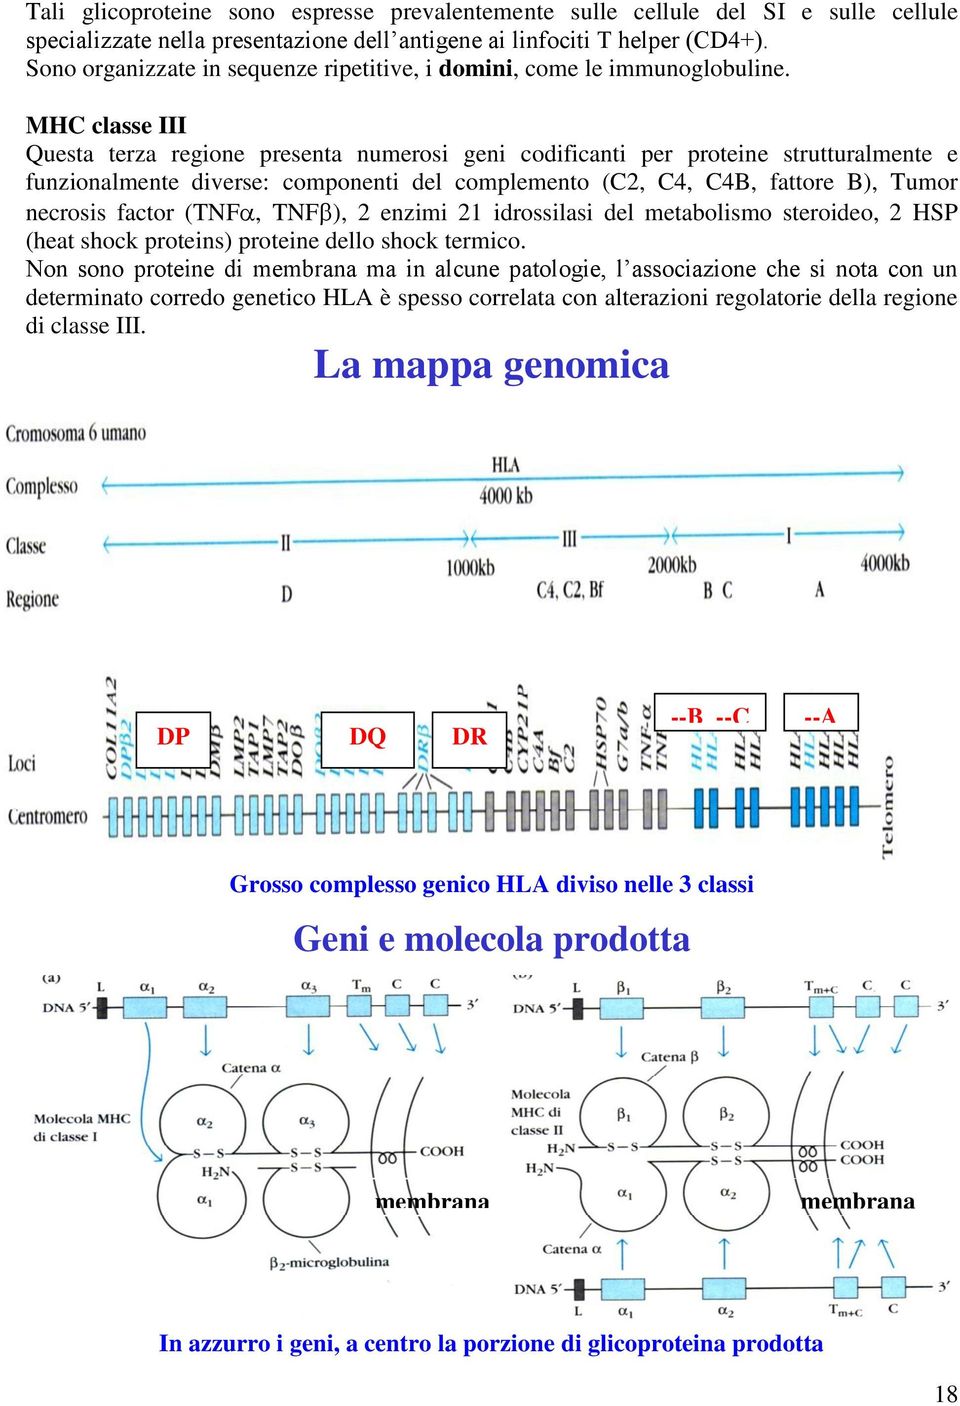 MHC classe III Questa terza regione presenta numerosi geni codificanti per proteine strutturalmente e funzionalmente diverse: componenti del complemento (C2, C4, C4B, fattore B), Tumor necrosis